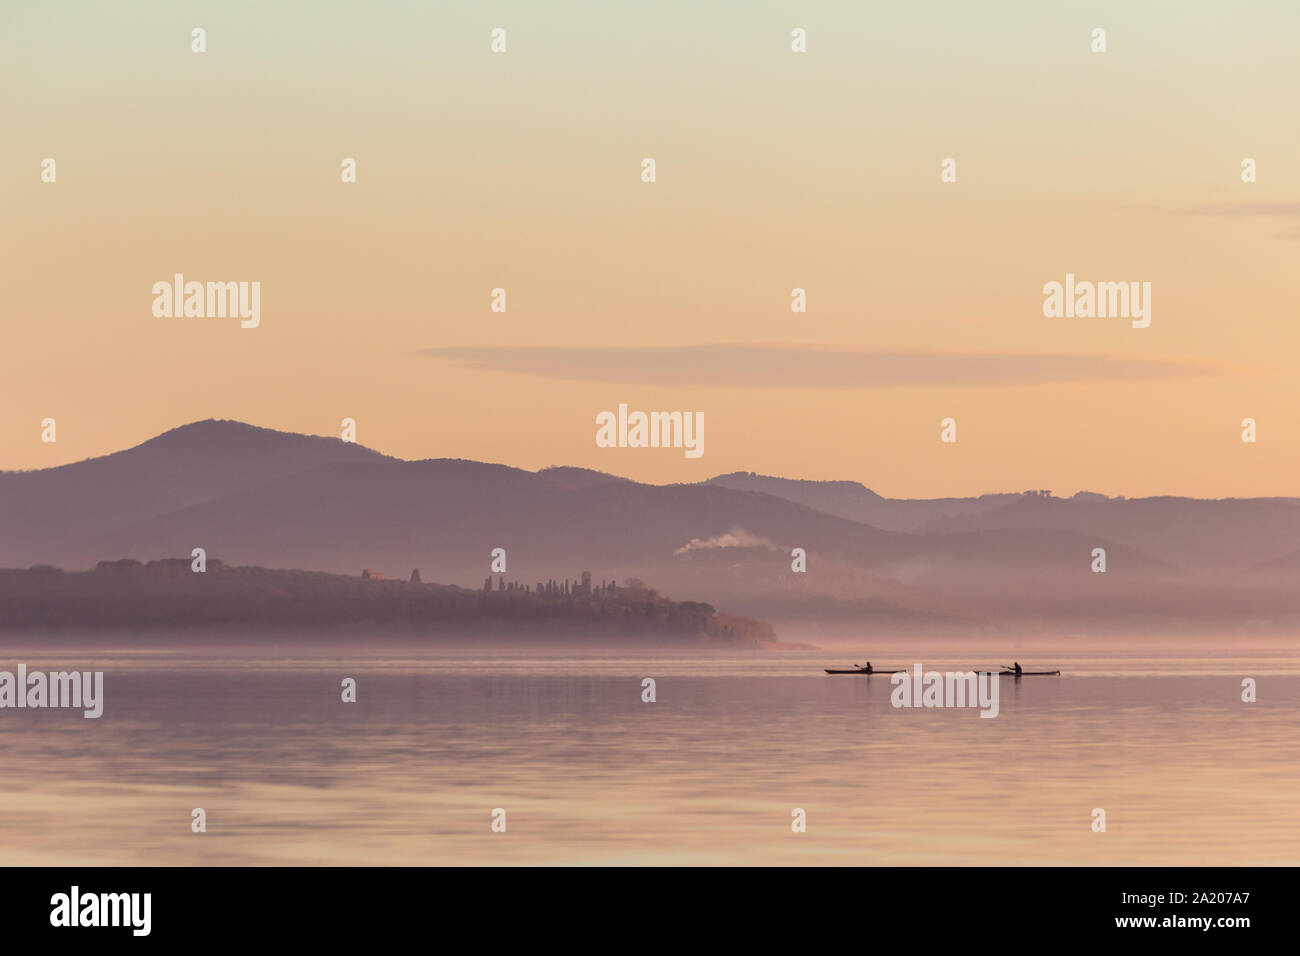 Bellissima vista del lago al tramonto, con toni di colore arancione e due uomini su canoe Foto Stock